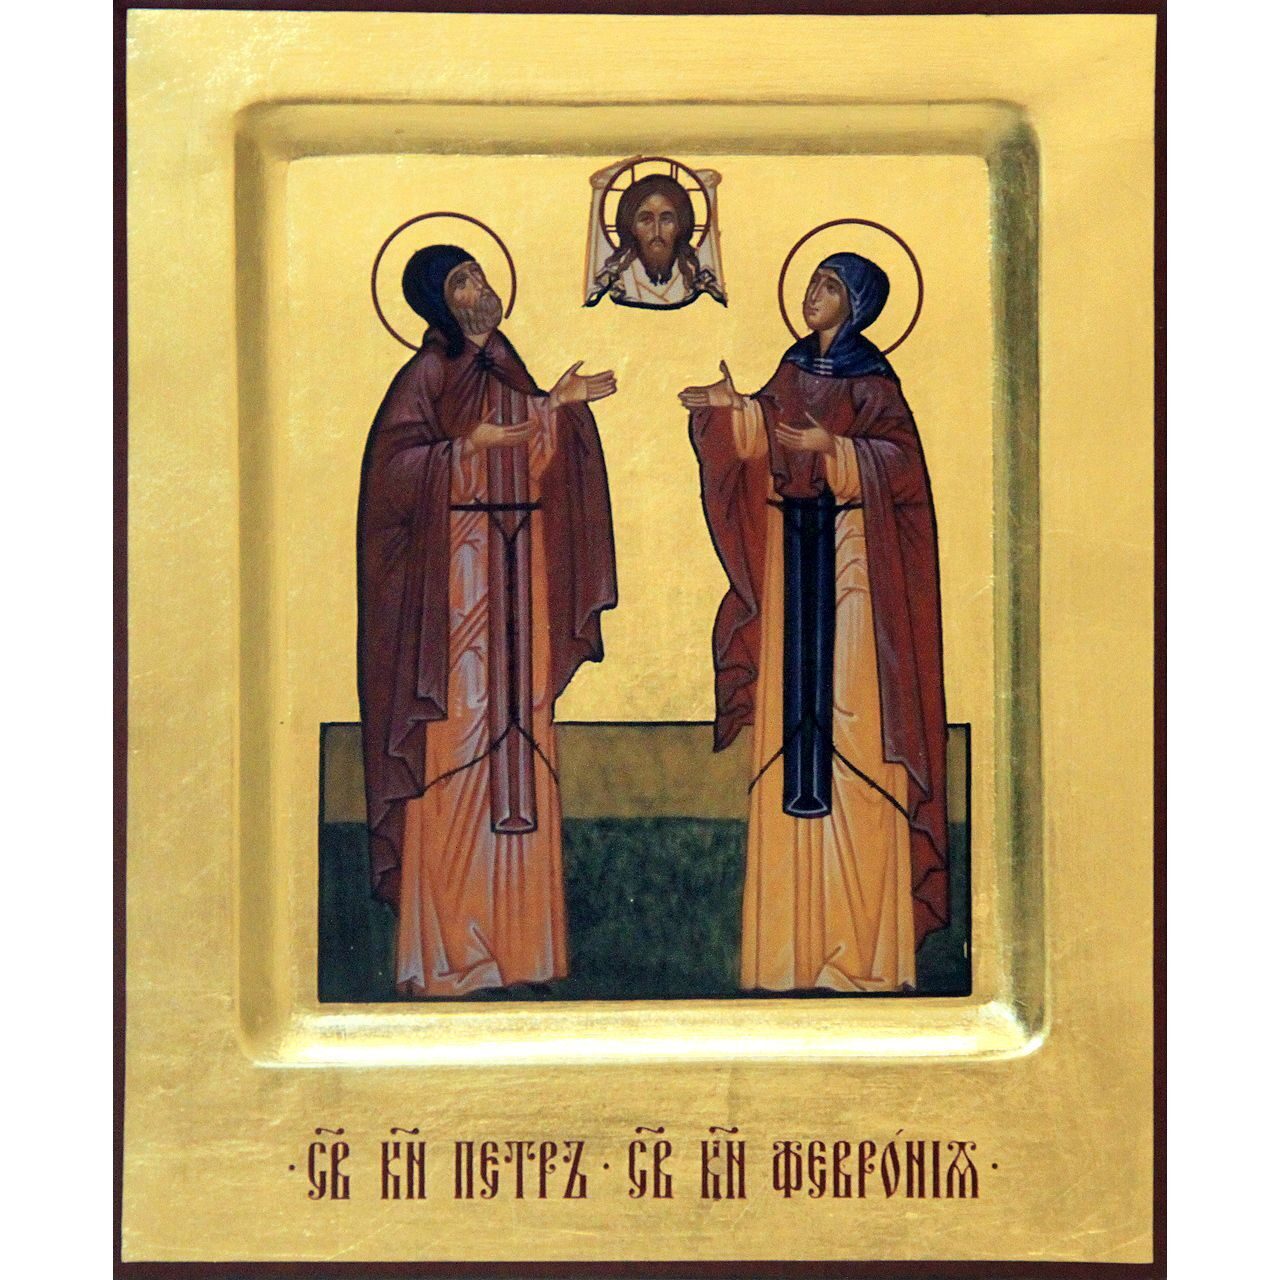 Петр и Феврония святые благоверные князья Муромские, икона